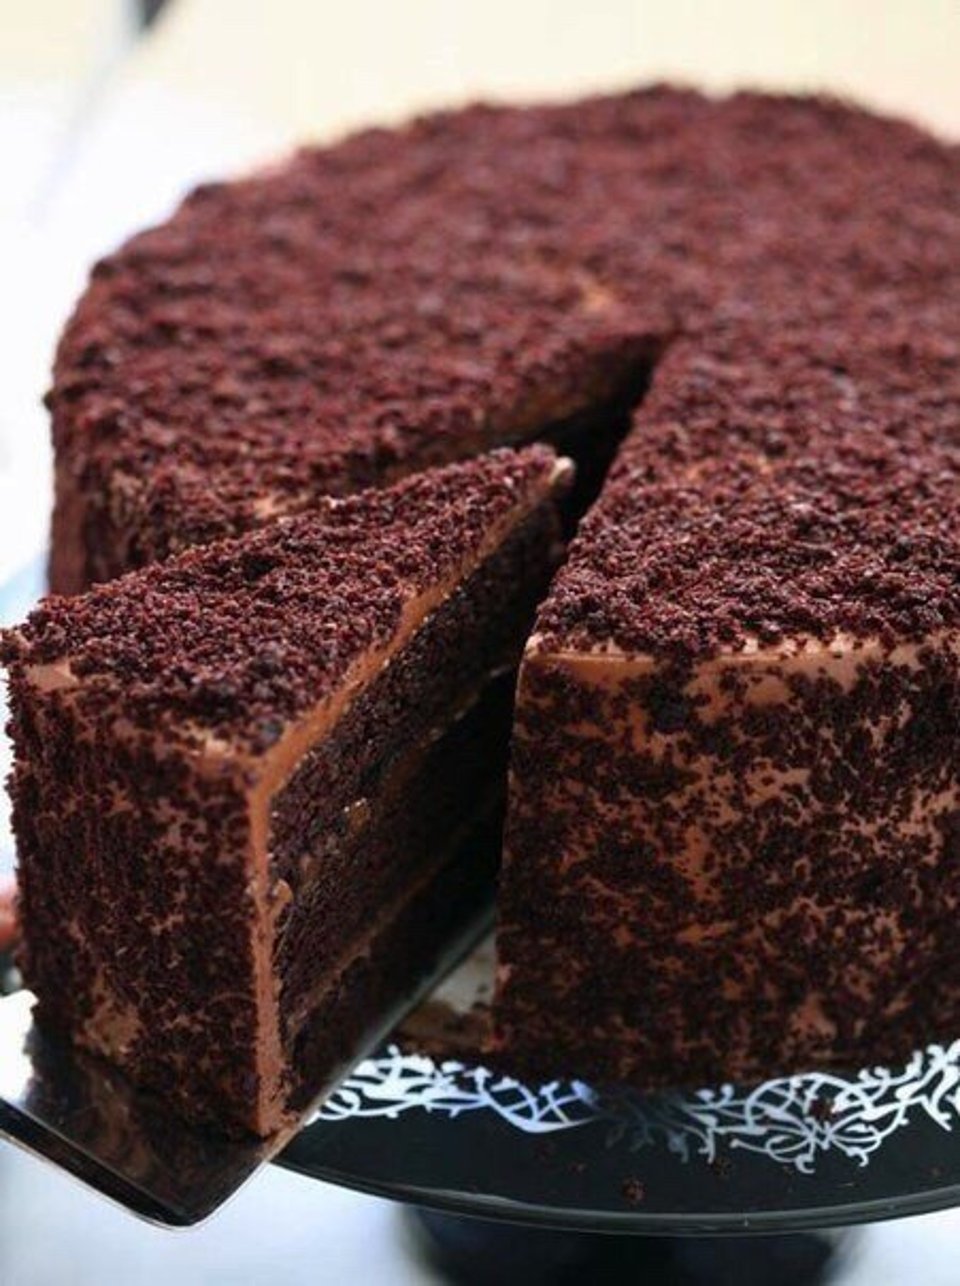 Торт "Шоколадный"